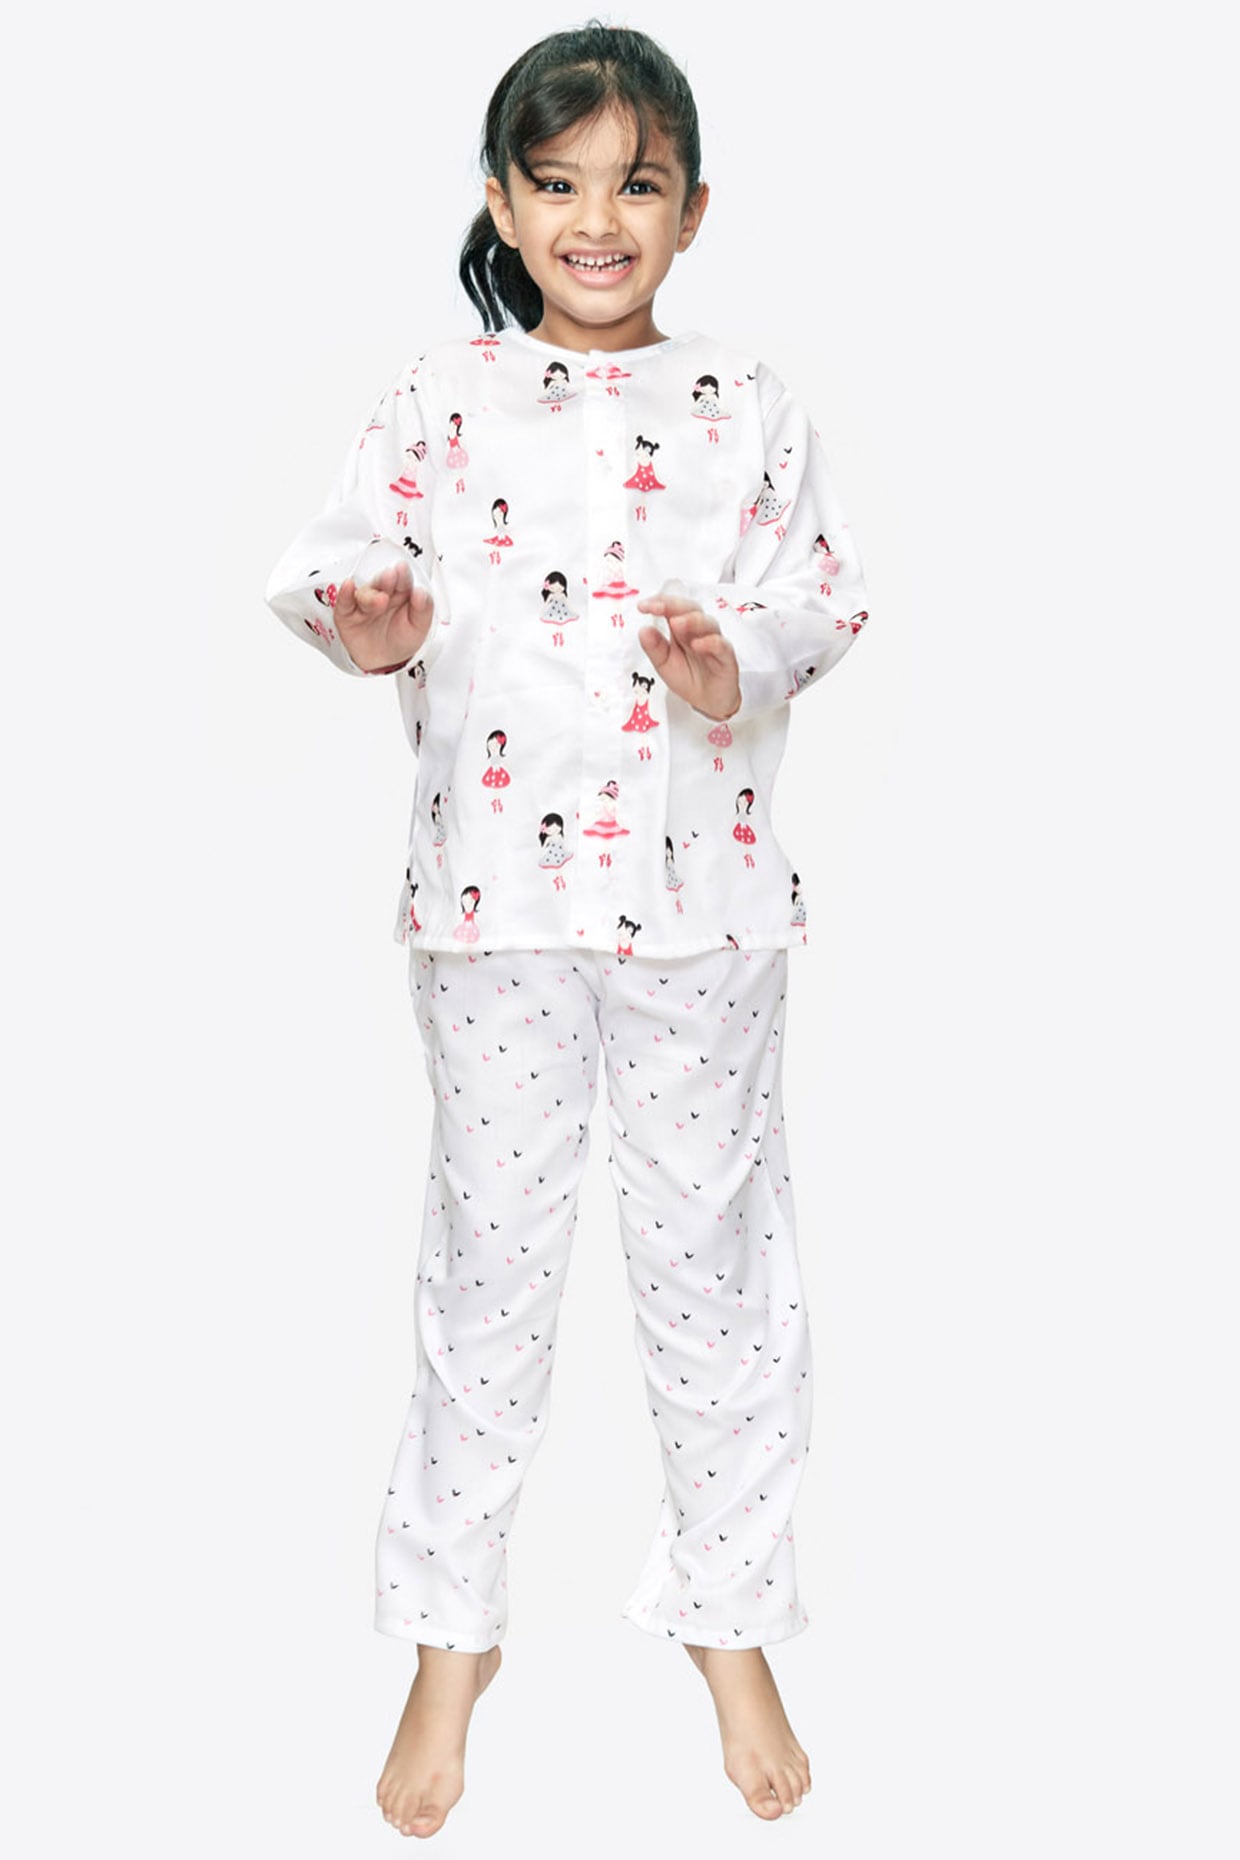 Unisex kids Pajamas Set | Satin Nightwear for 1-16 Years